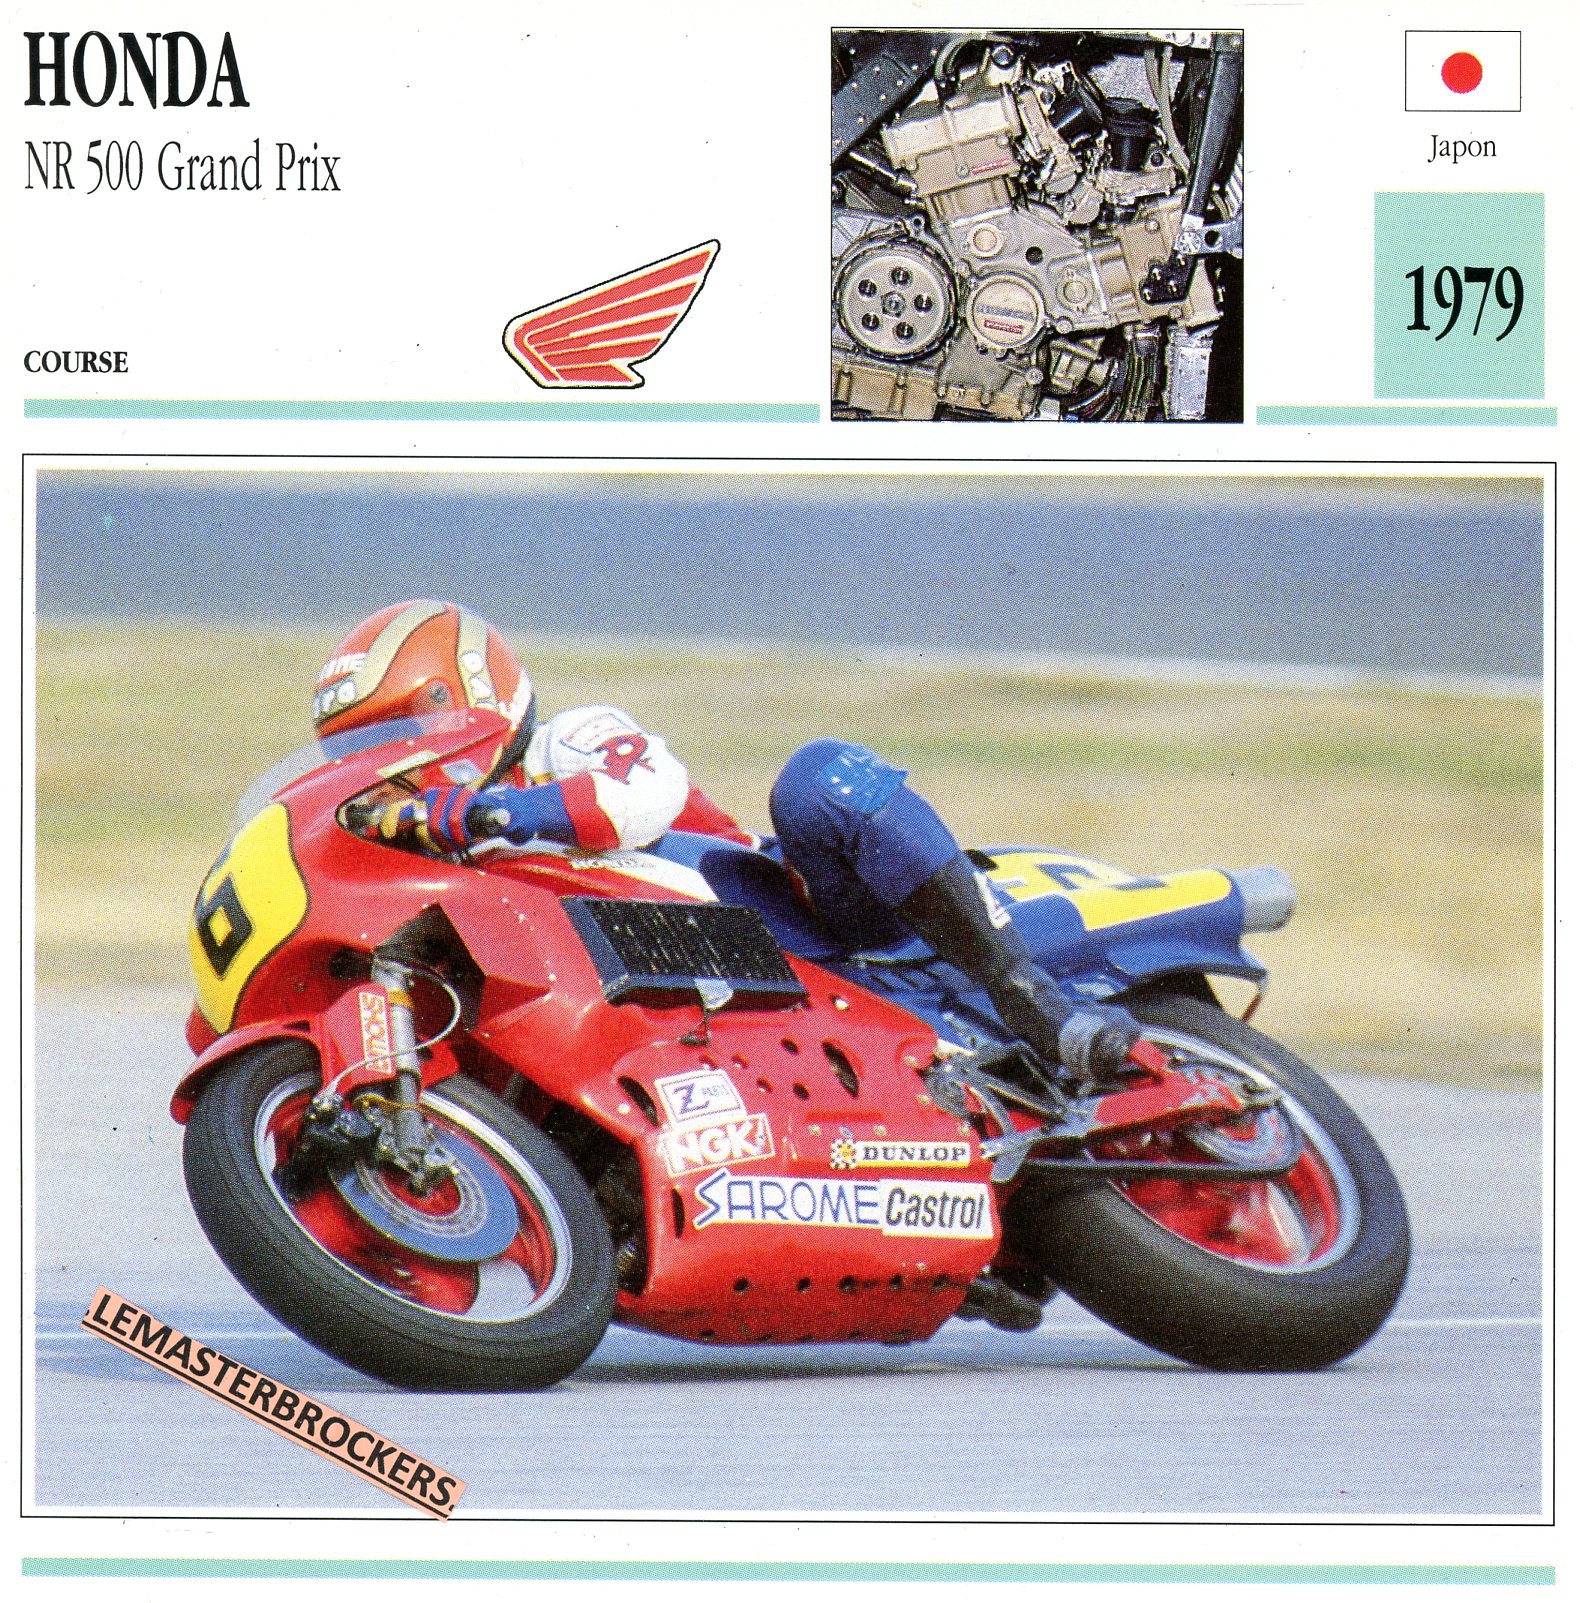 FICHE-MOTO-HONDA-NR-NR-500-1979-LEMASTERBROCKERS-CARS-MOTORCYCLE